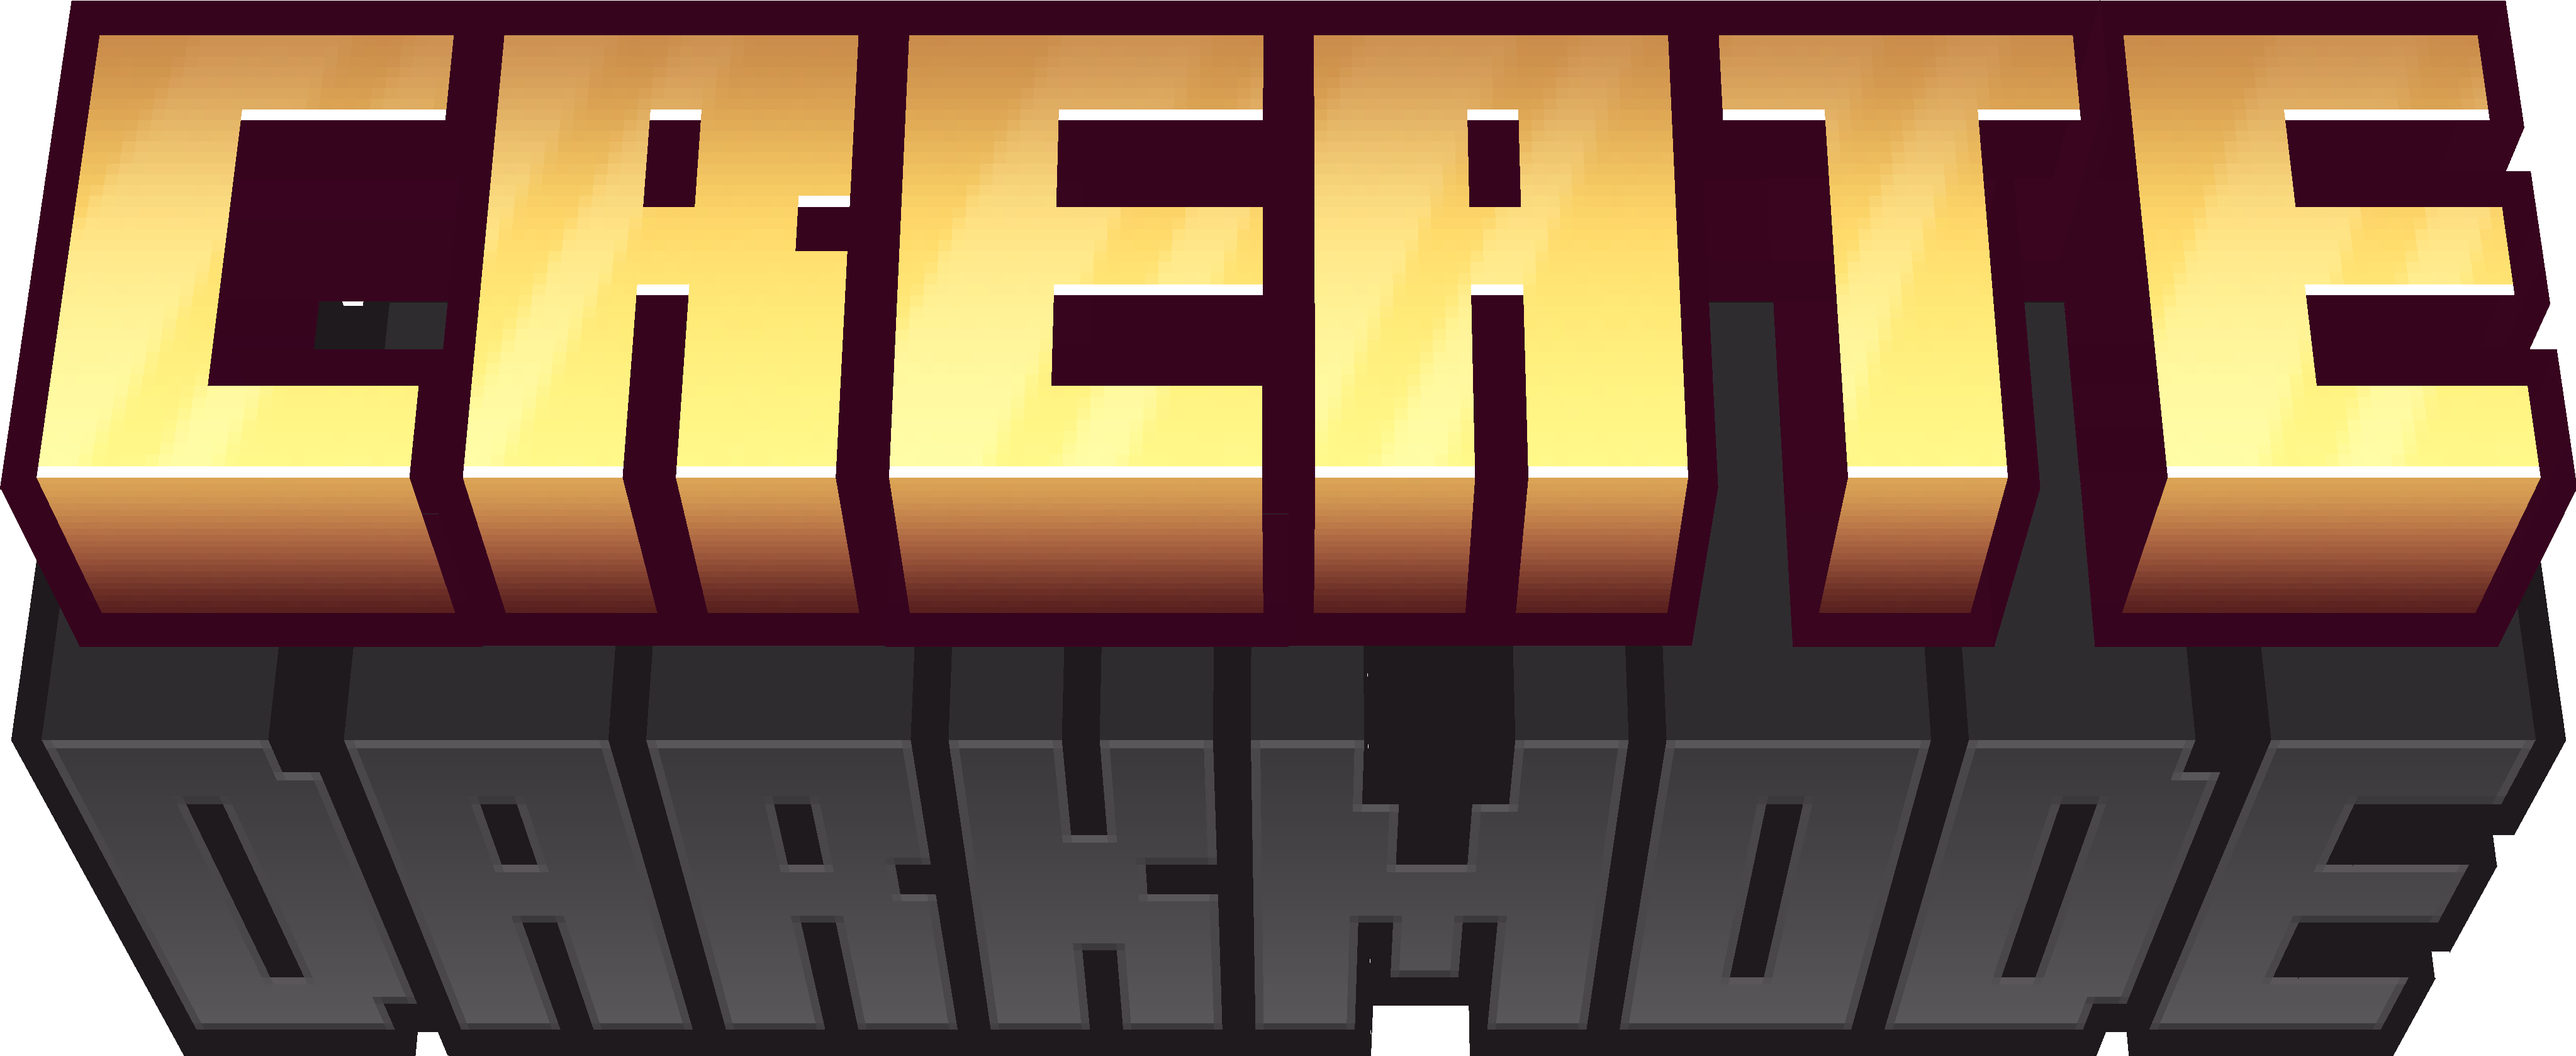 create a minecraft update logo